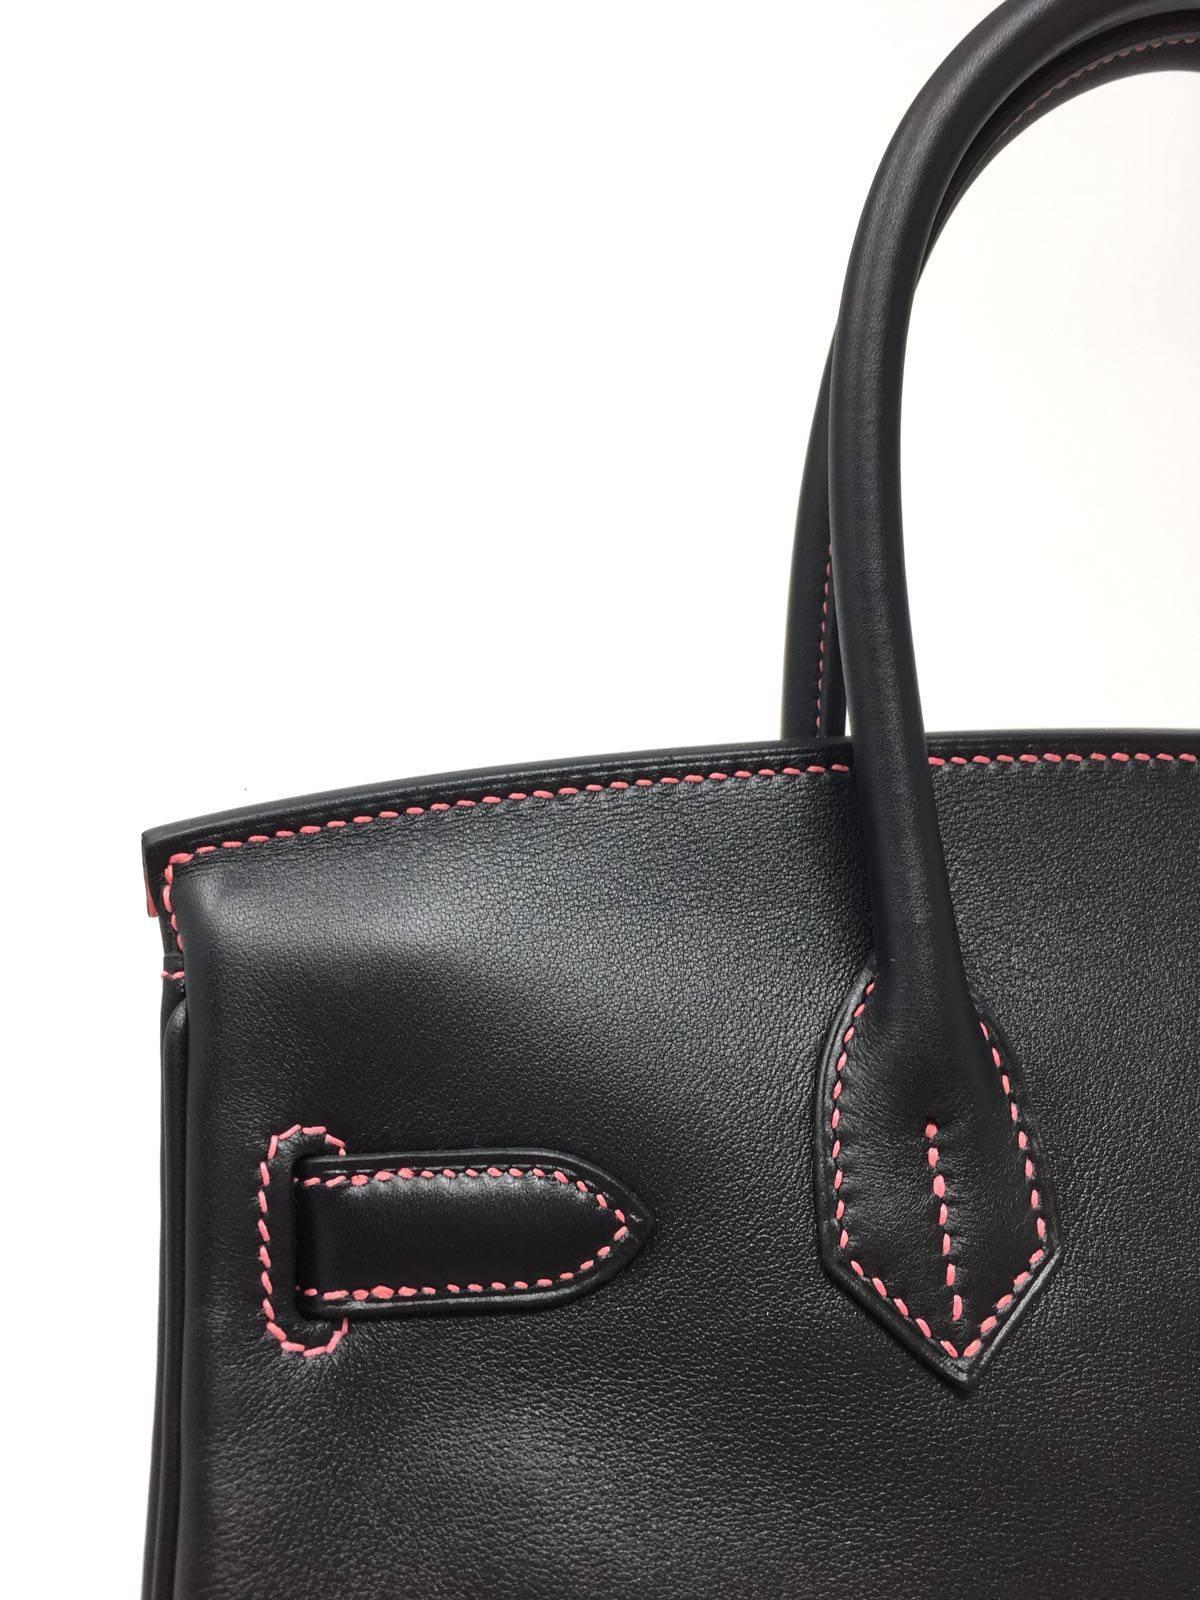 Hermes Black and Rose Azalee Chevre Special Order Birkin 30 cm Bag, 2018  11